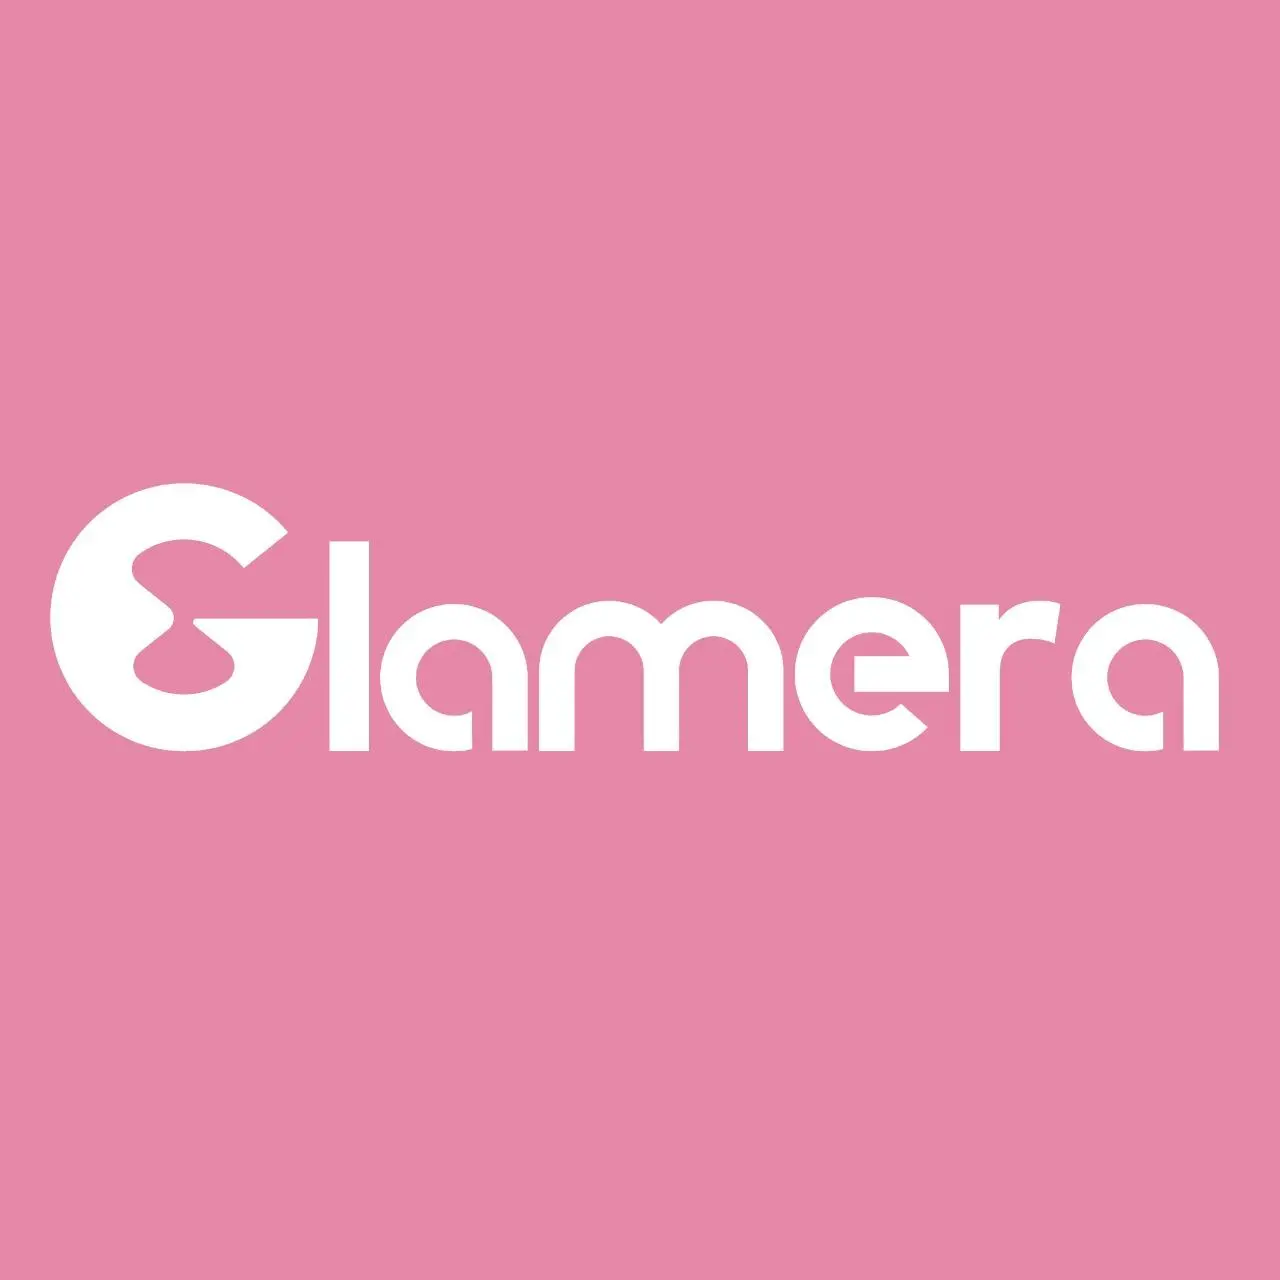 شركة Glamera المصرية تحصل على تمويل من 6 أرقام بالدولار الأمريكي